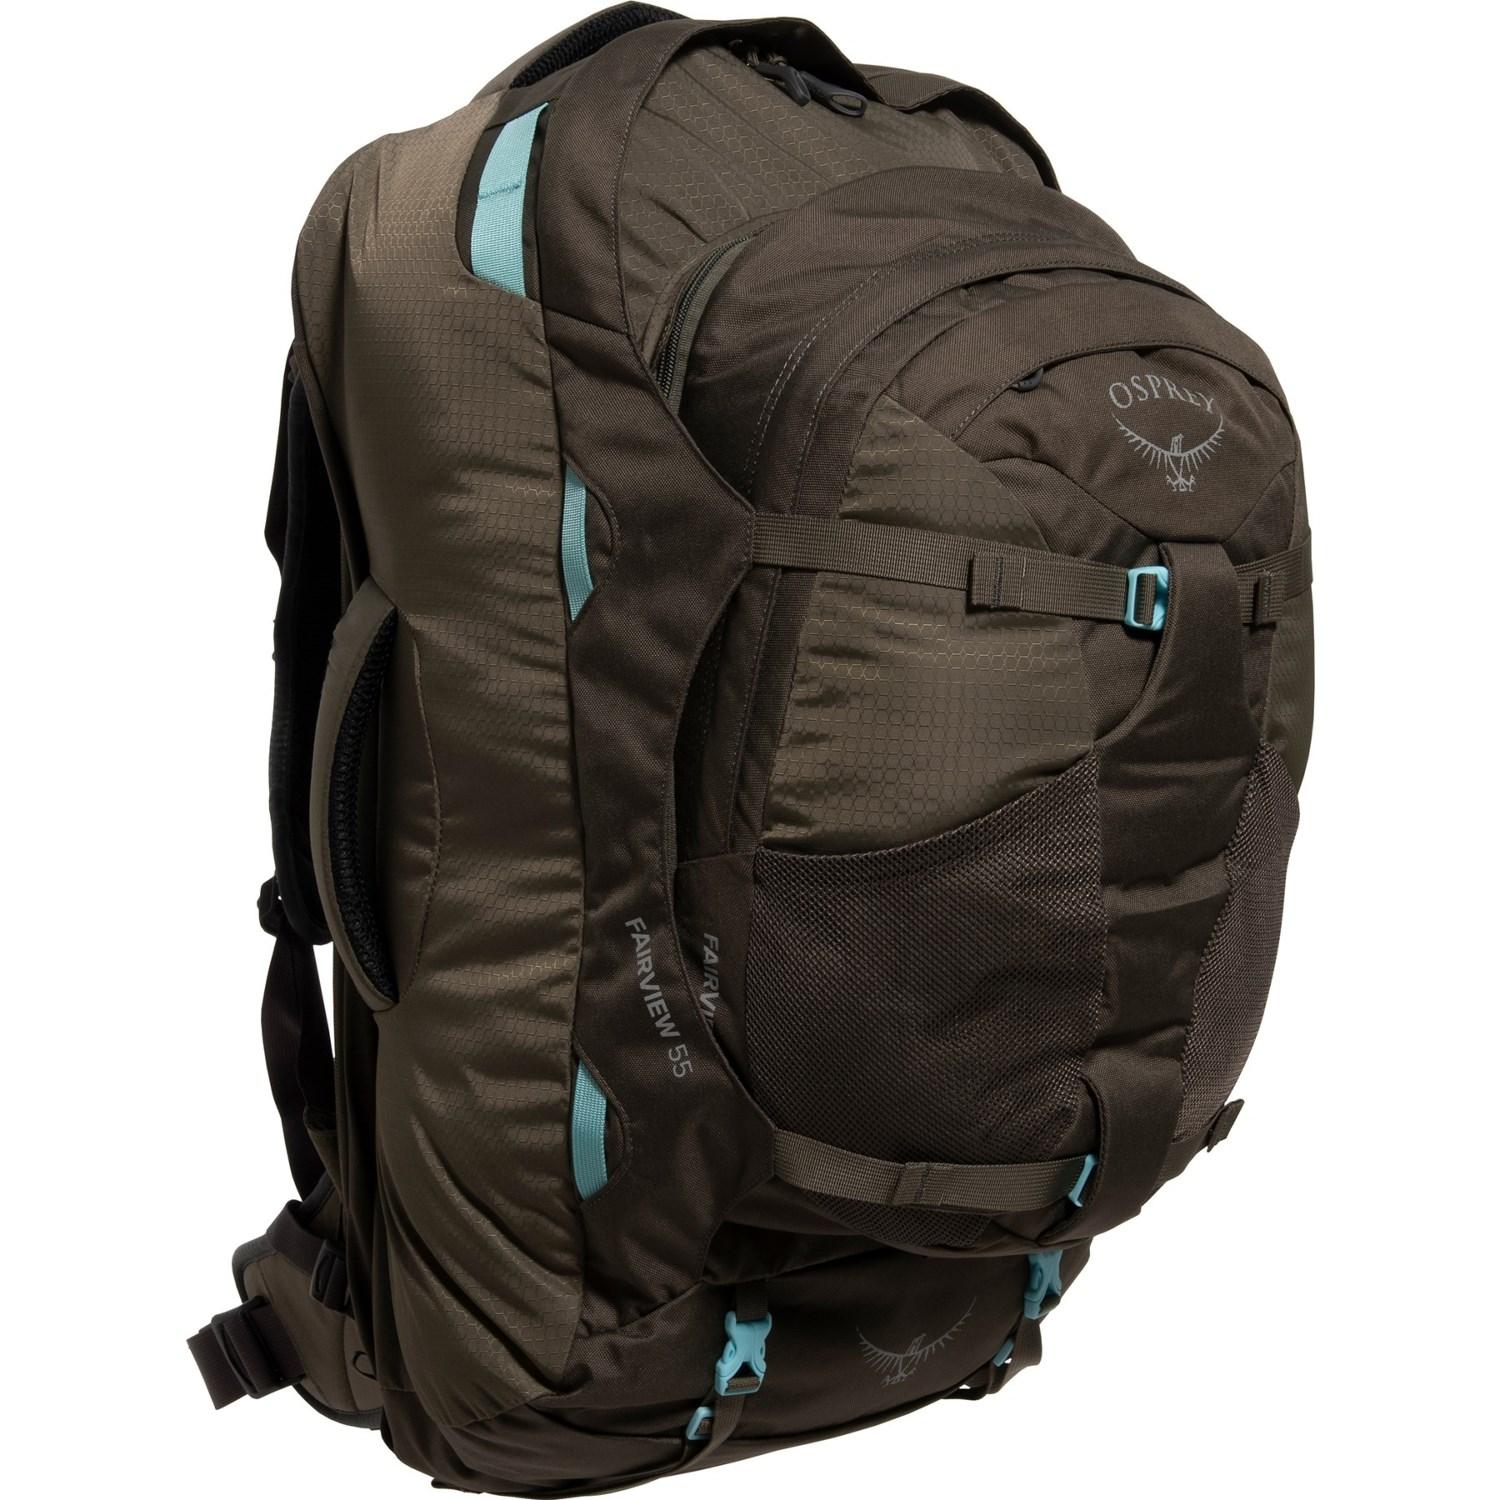 Osprey 55L Travel Backpacks for $99.99 Shipped